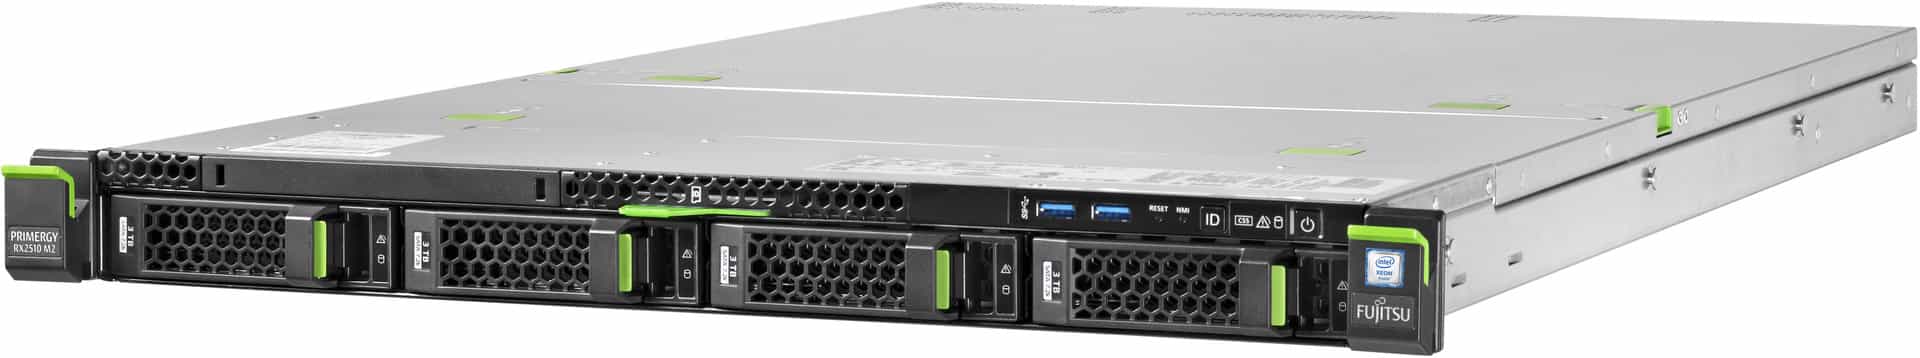 Стоечный сервер Fujitsu Primergy PY RX2510 M2 1ая конфигурация-1